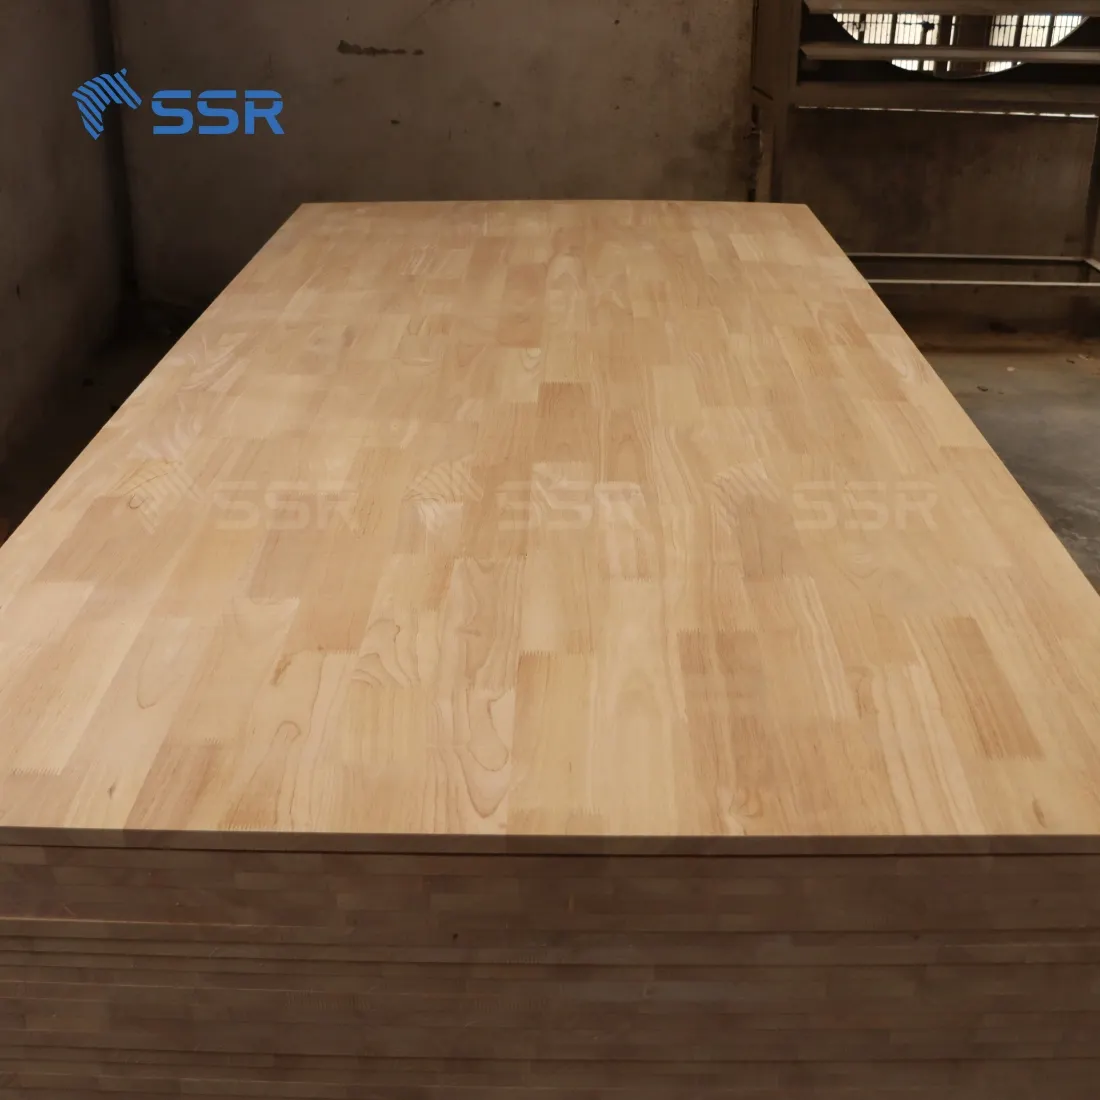 لوح خشب مطاطي من الخشب والمطاط من SSR VINA من الفئة ABC